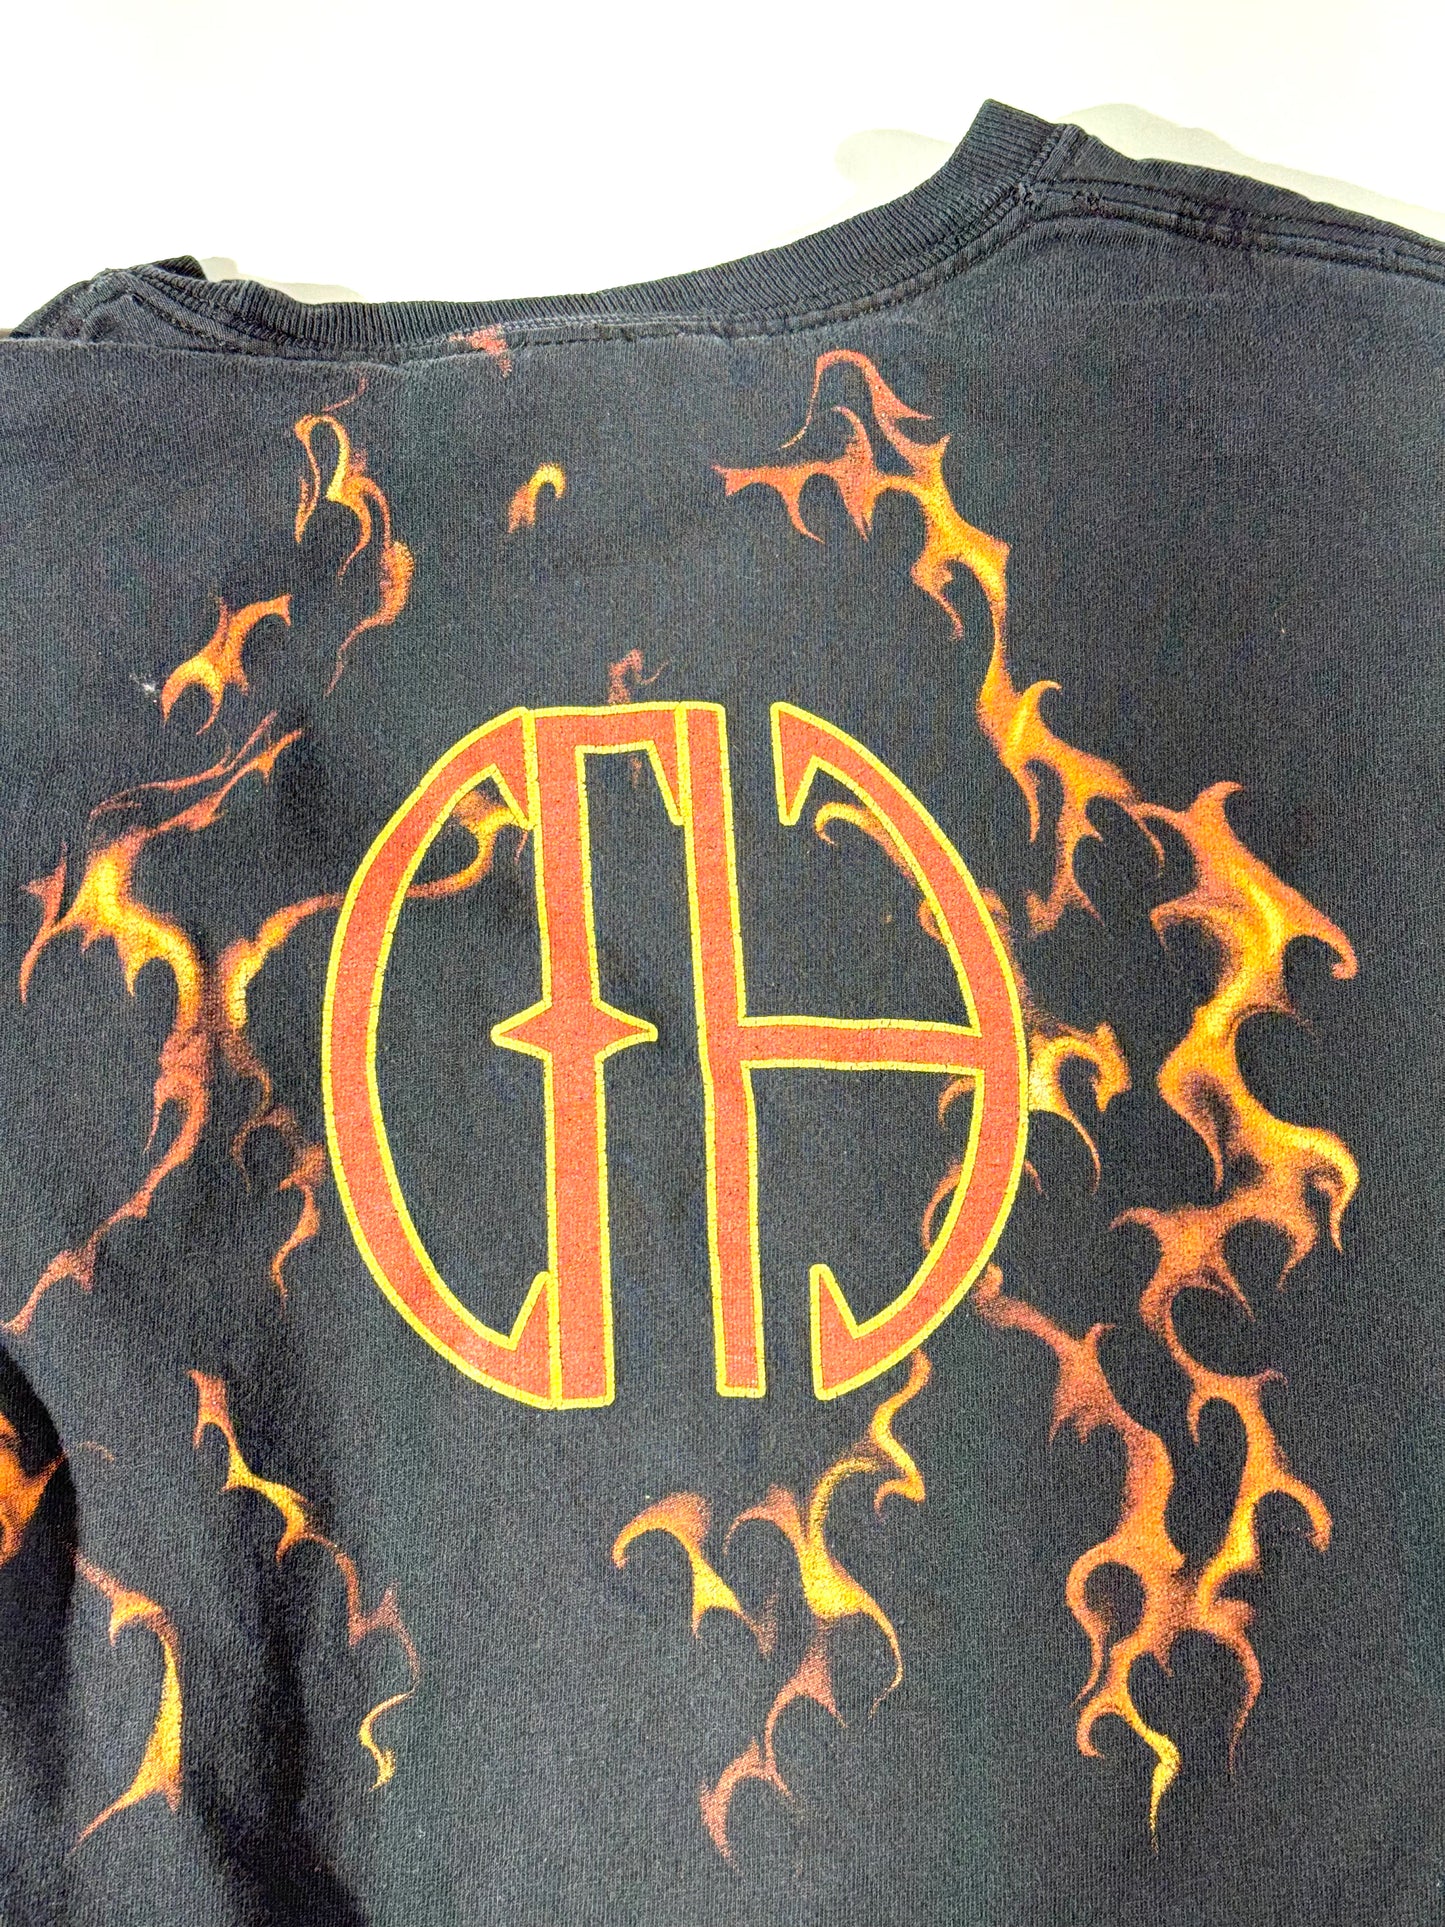 Vintage Pantera Band T-Shirt Flames Skull